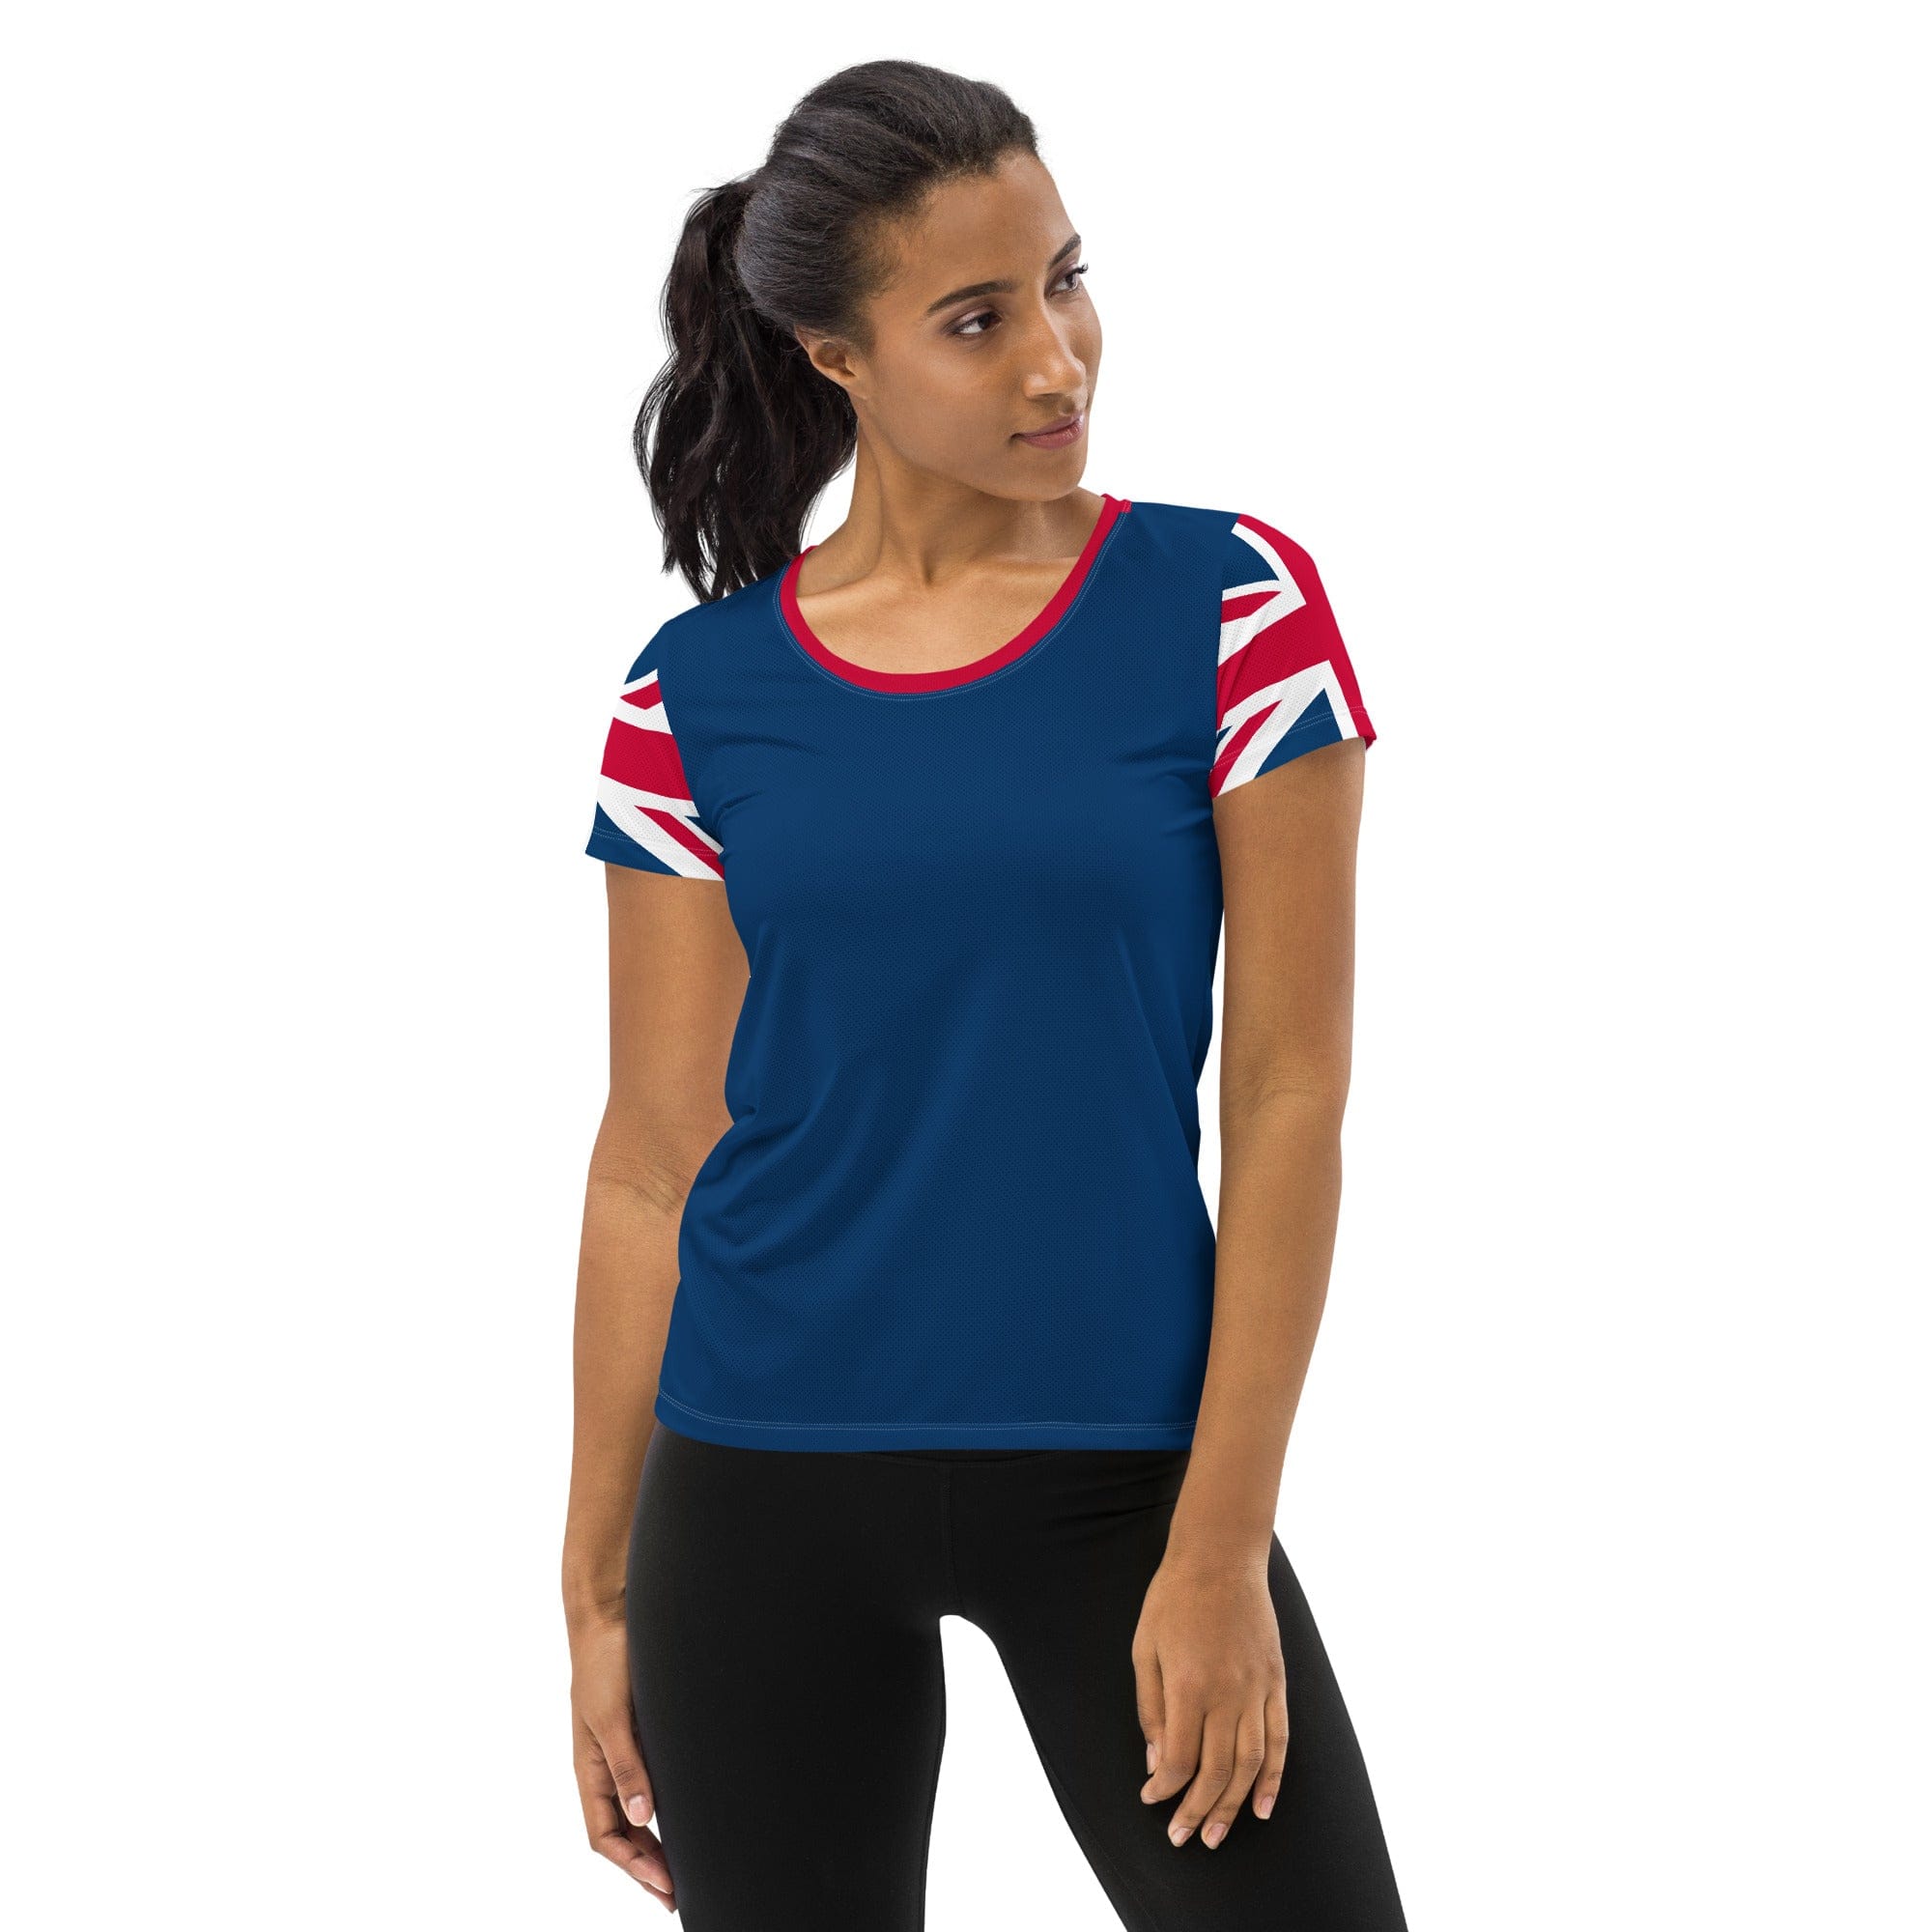 https://jollygoode.com/cdn/shop/files/union-jack-women-s-workout-shirt-women-s-athletic-shirts-jolly-goode-52967617233173.jpg?v=1702670748&width=2000